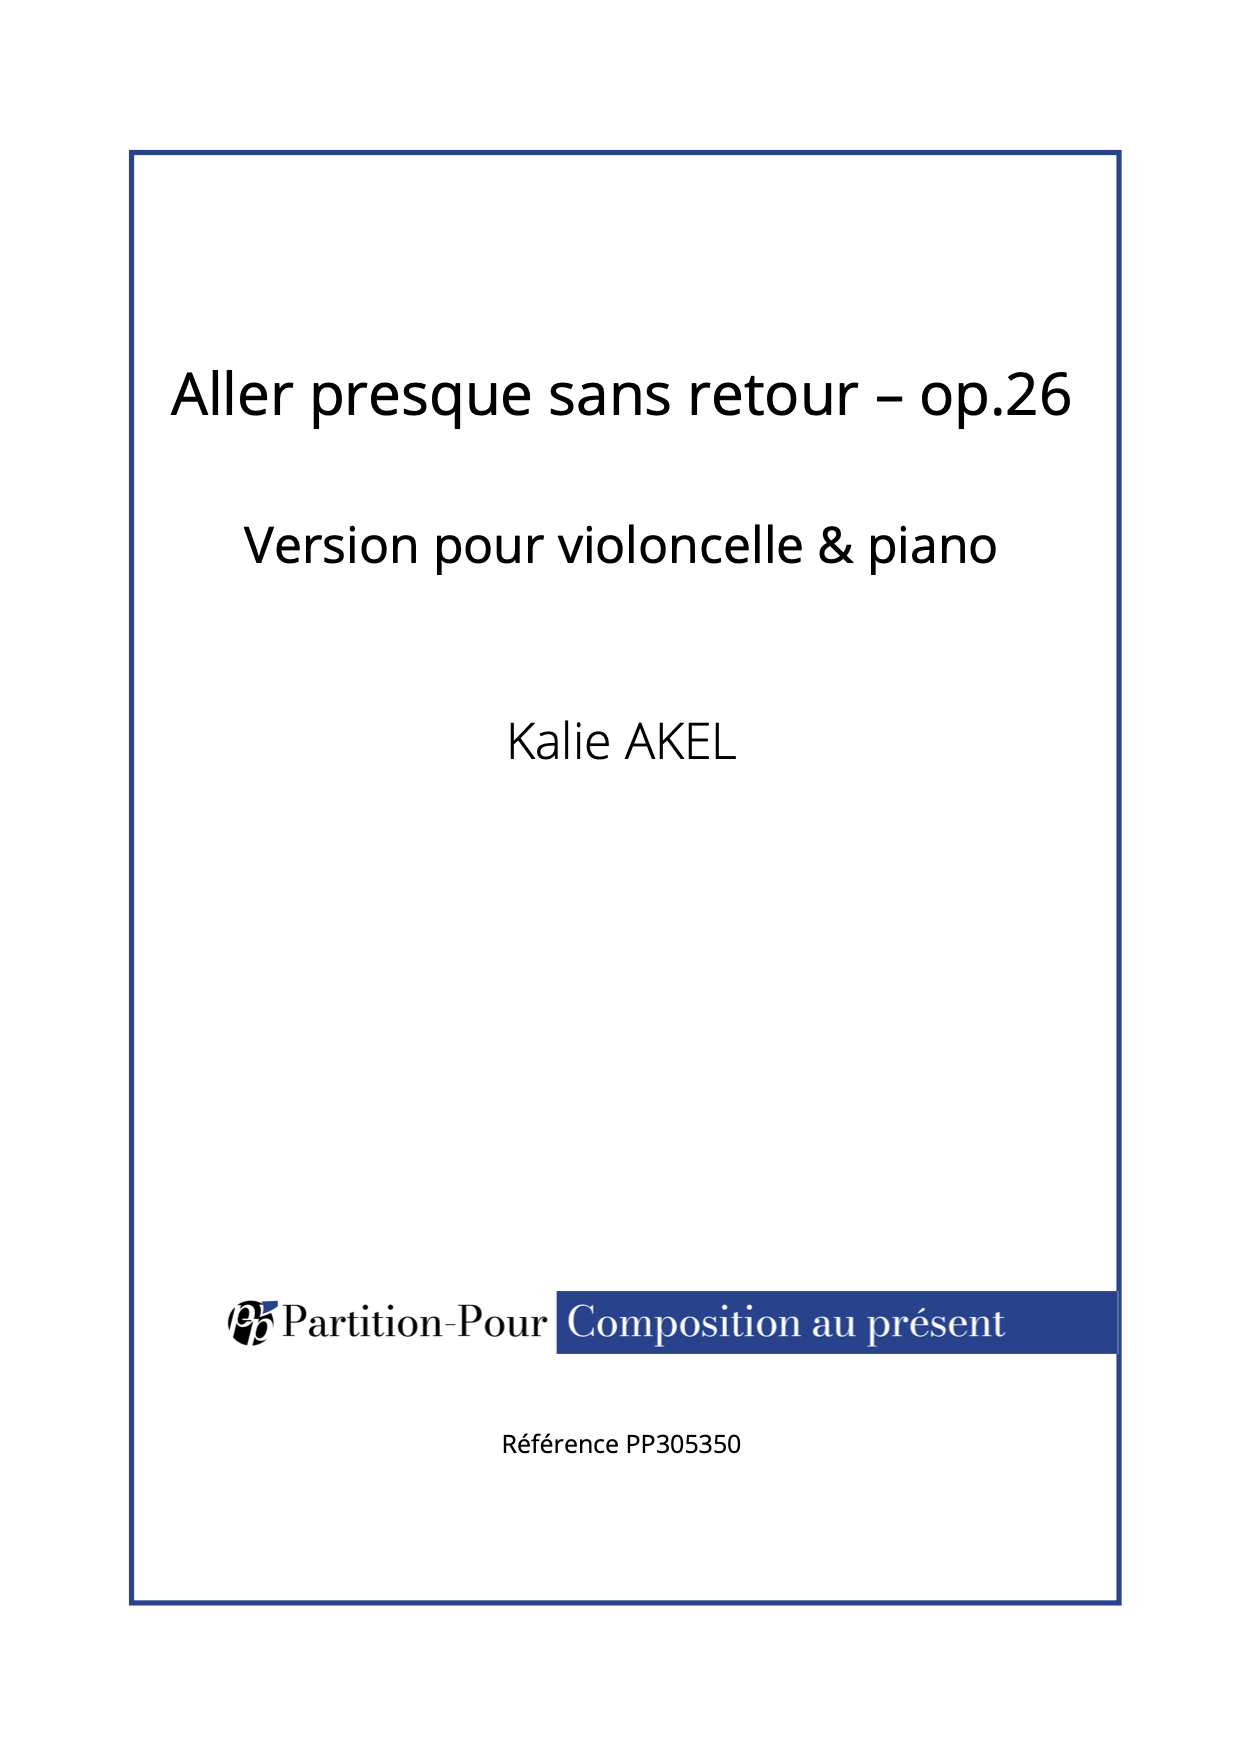 PP305350 - Akel K - Aller presque sans retour op.26 - violoncelle & piano -présentation